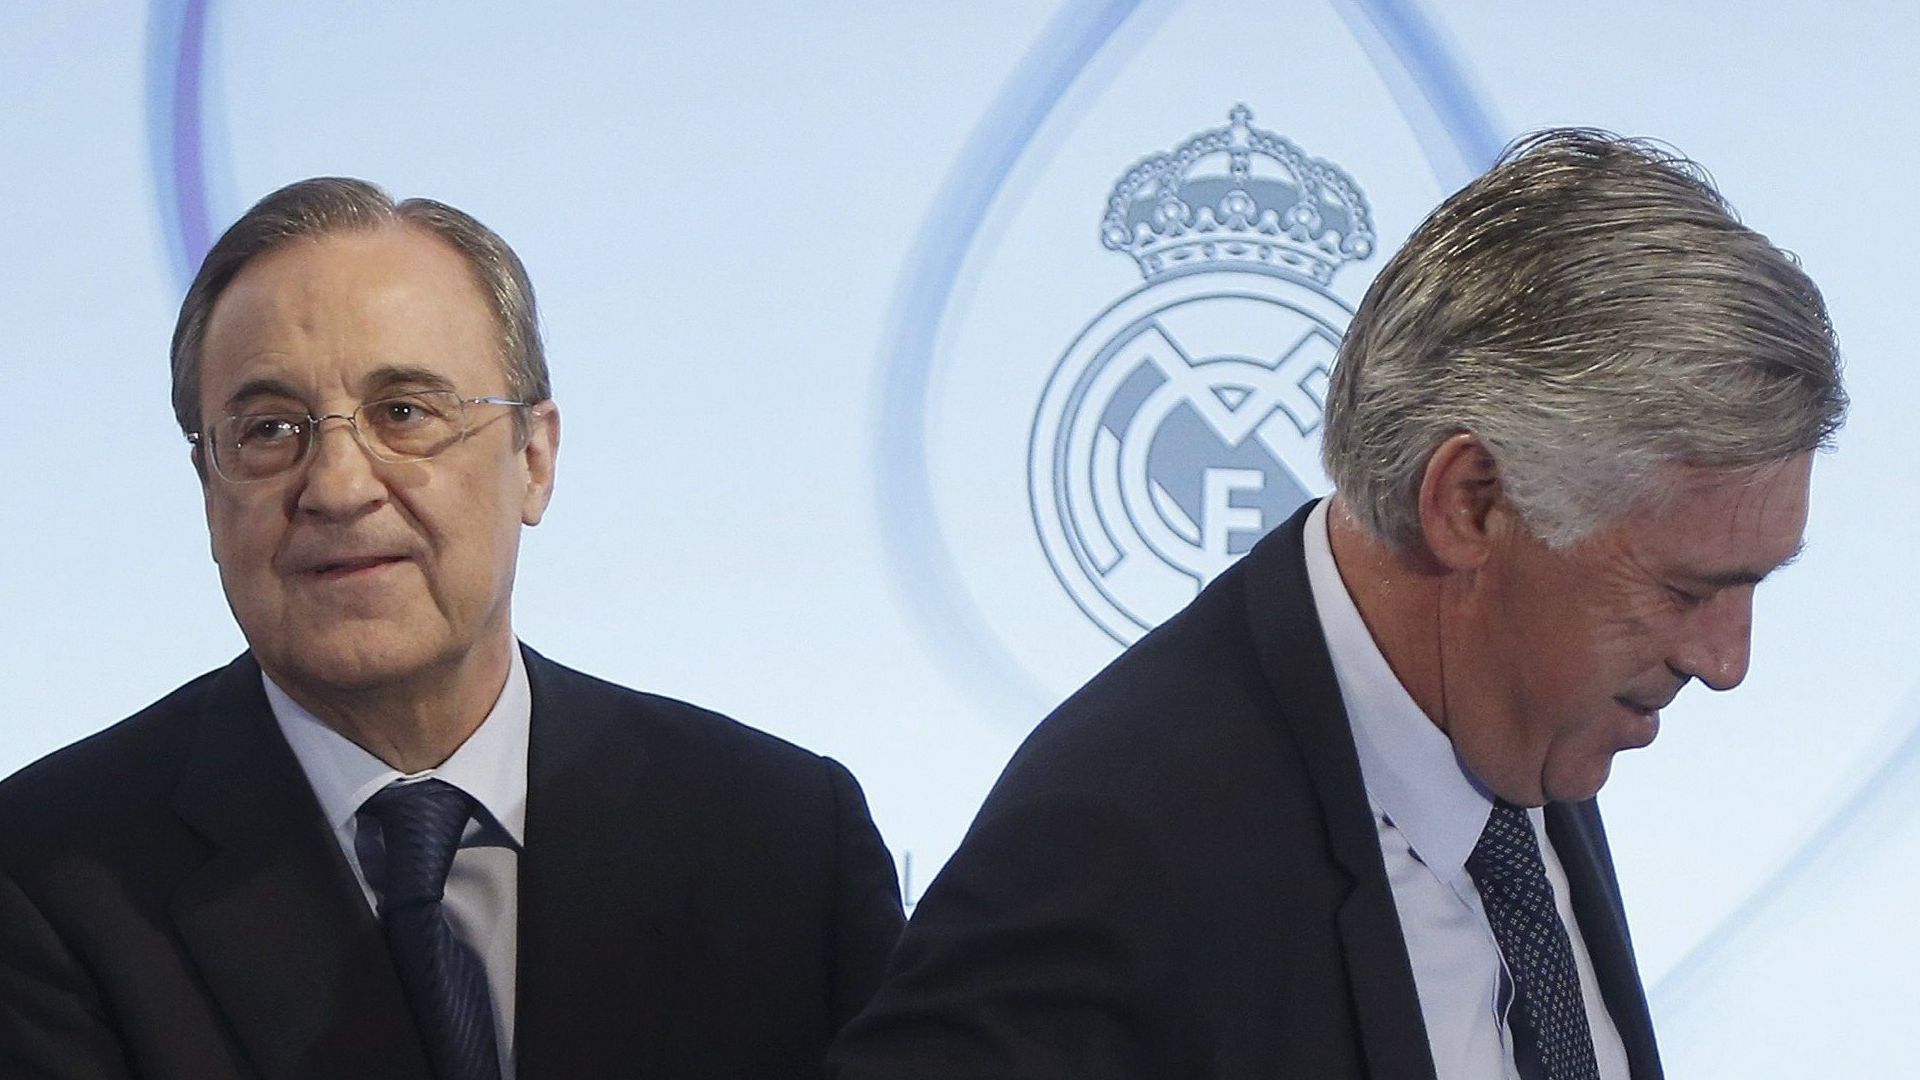 Tuchel out, une surprise annoncée pour remplacer Ancelotti au Real Madrid (Bild)